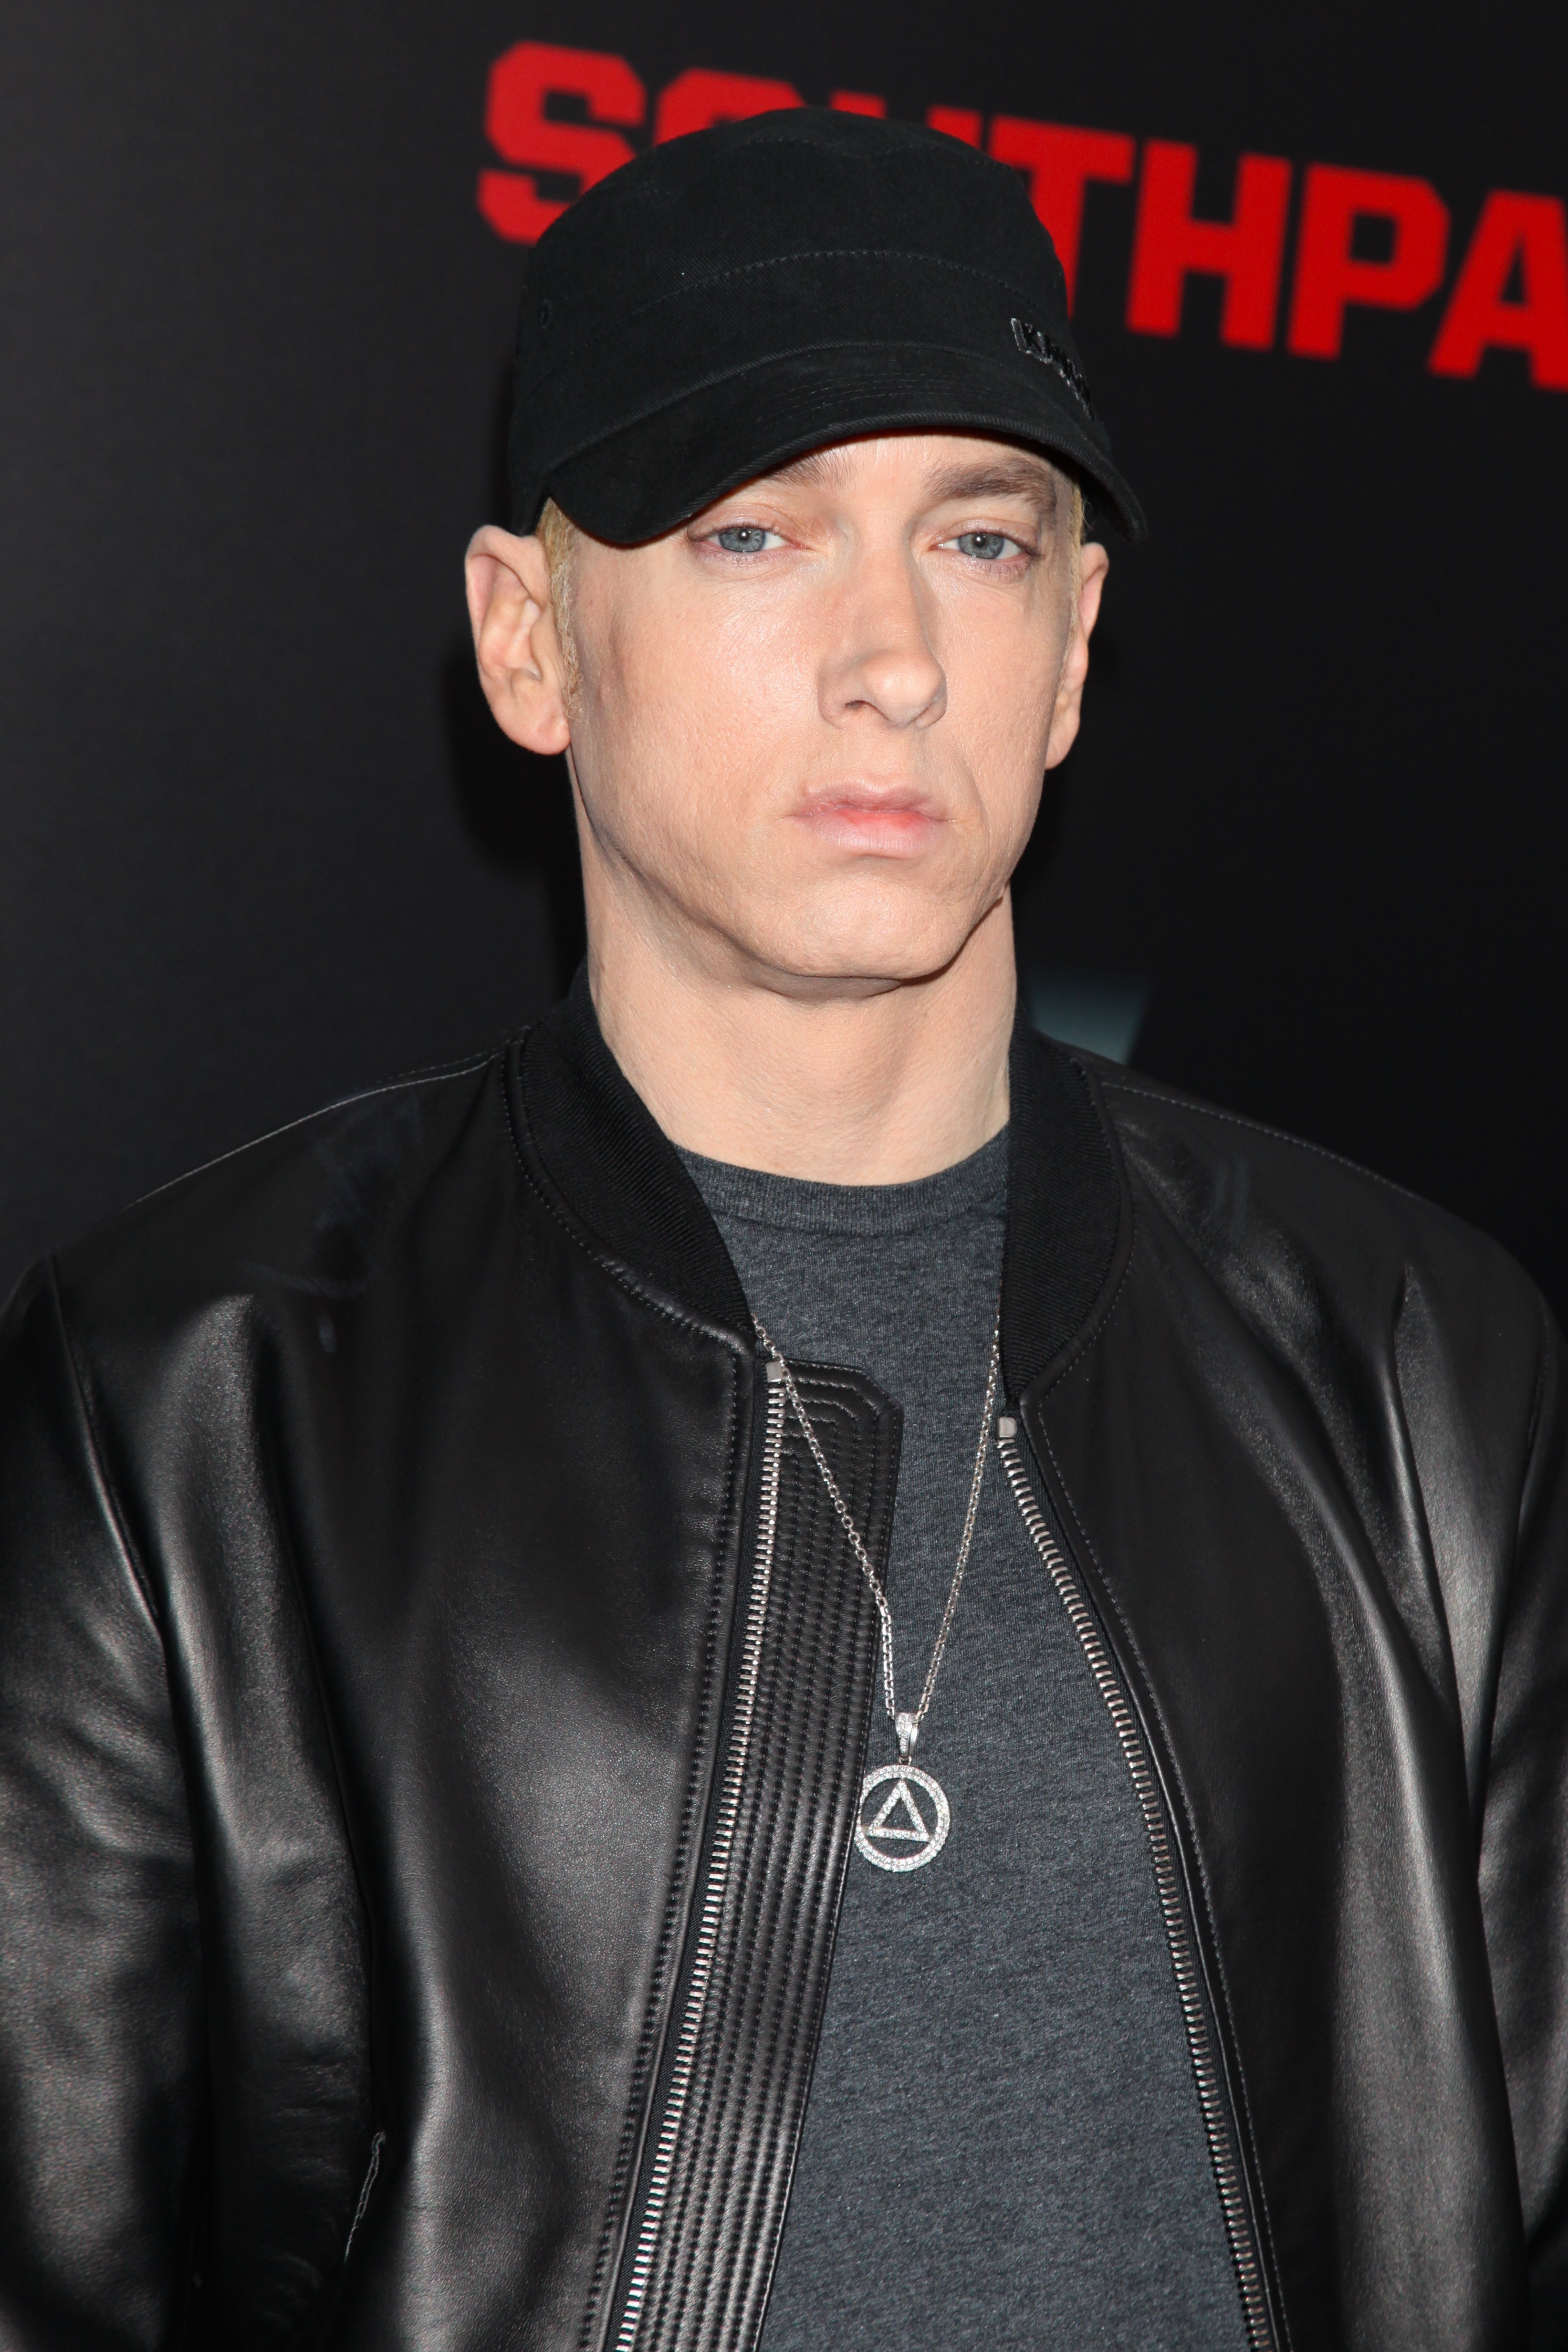 MIXTAPE + SONG DOWNLOAD: D12 w/ Eminem “FAME” + Return of The